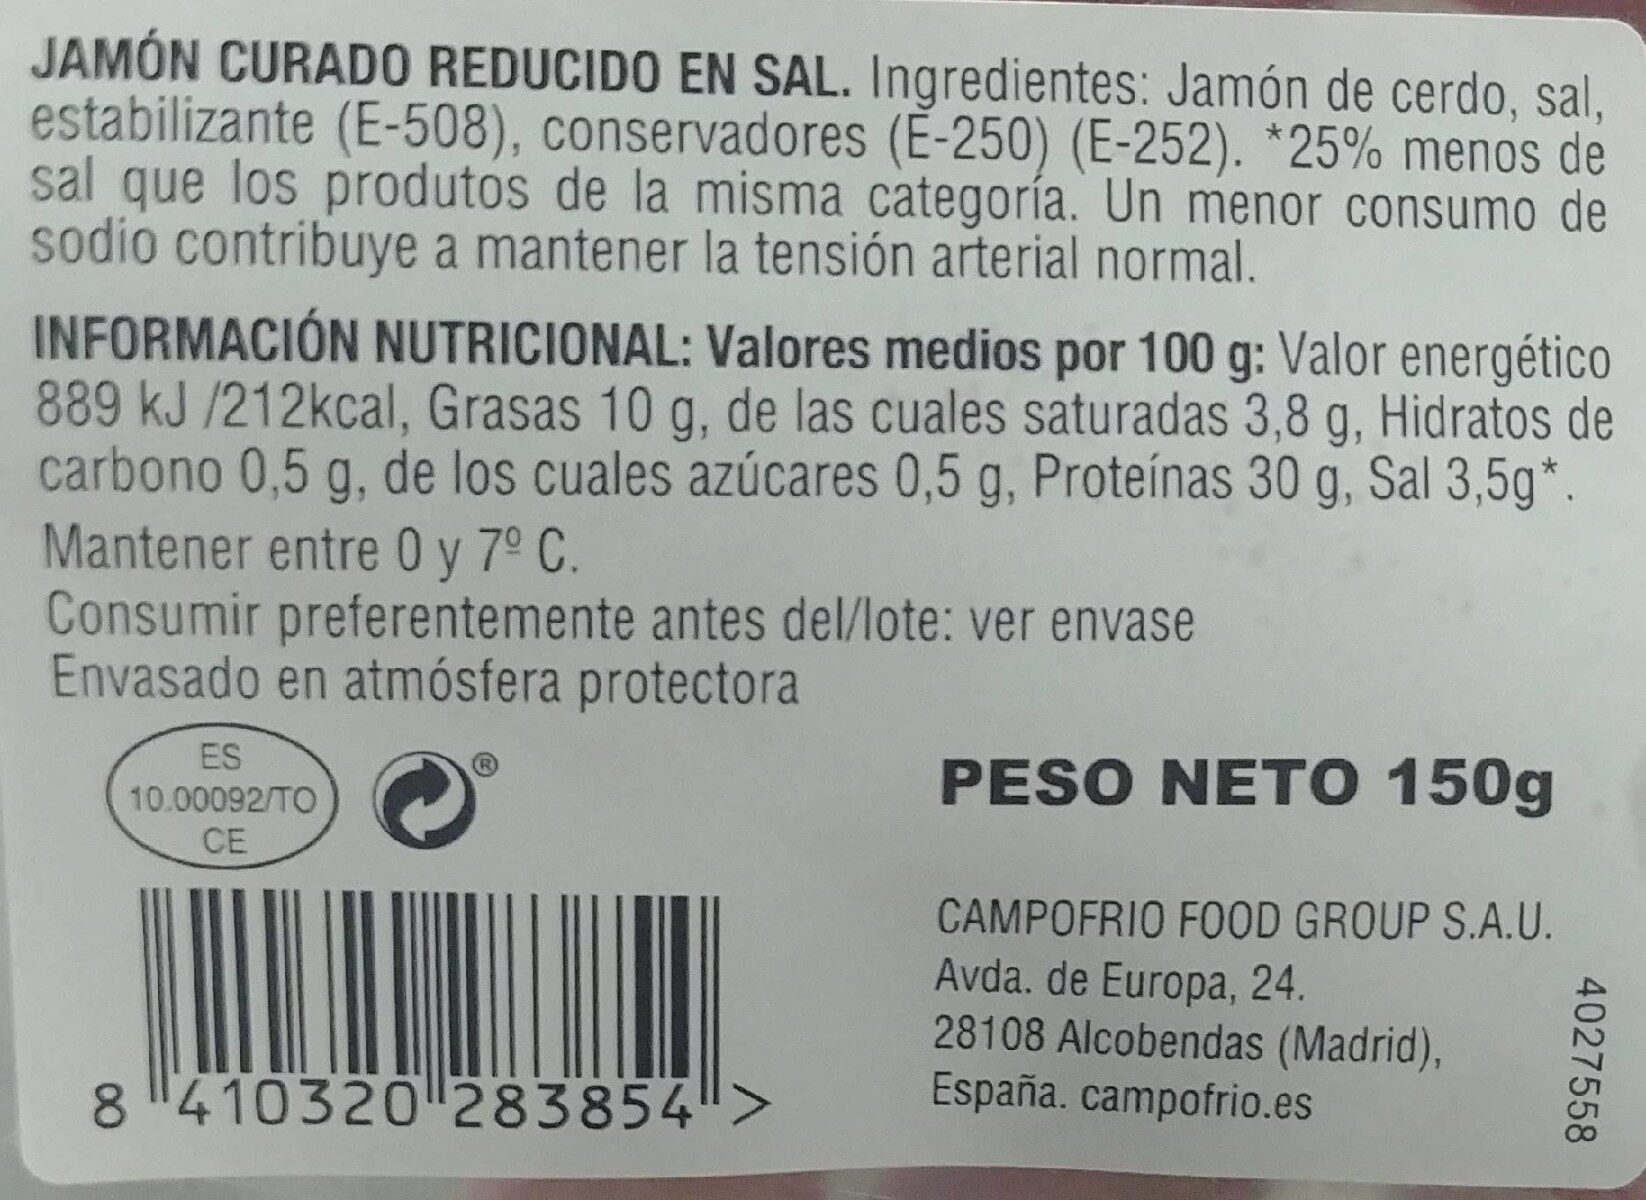 Jamón curado 25% Menos de Sal - Información nutricional